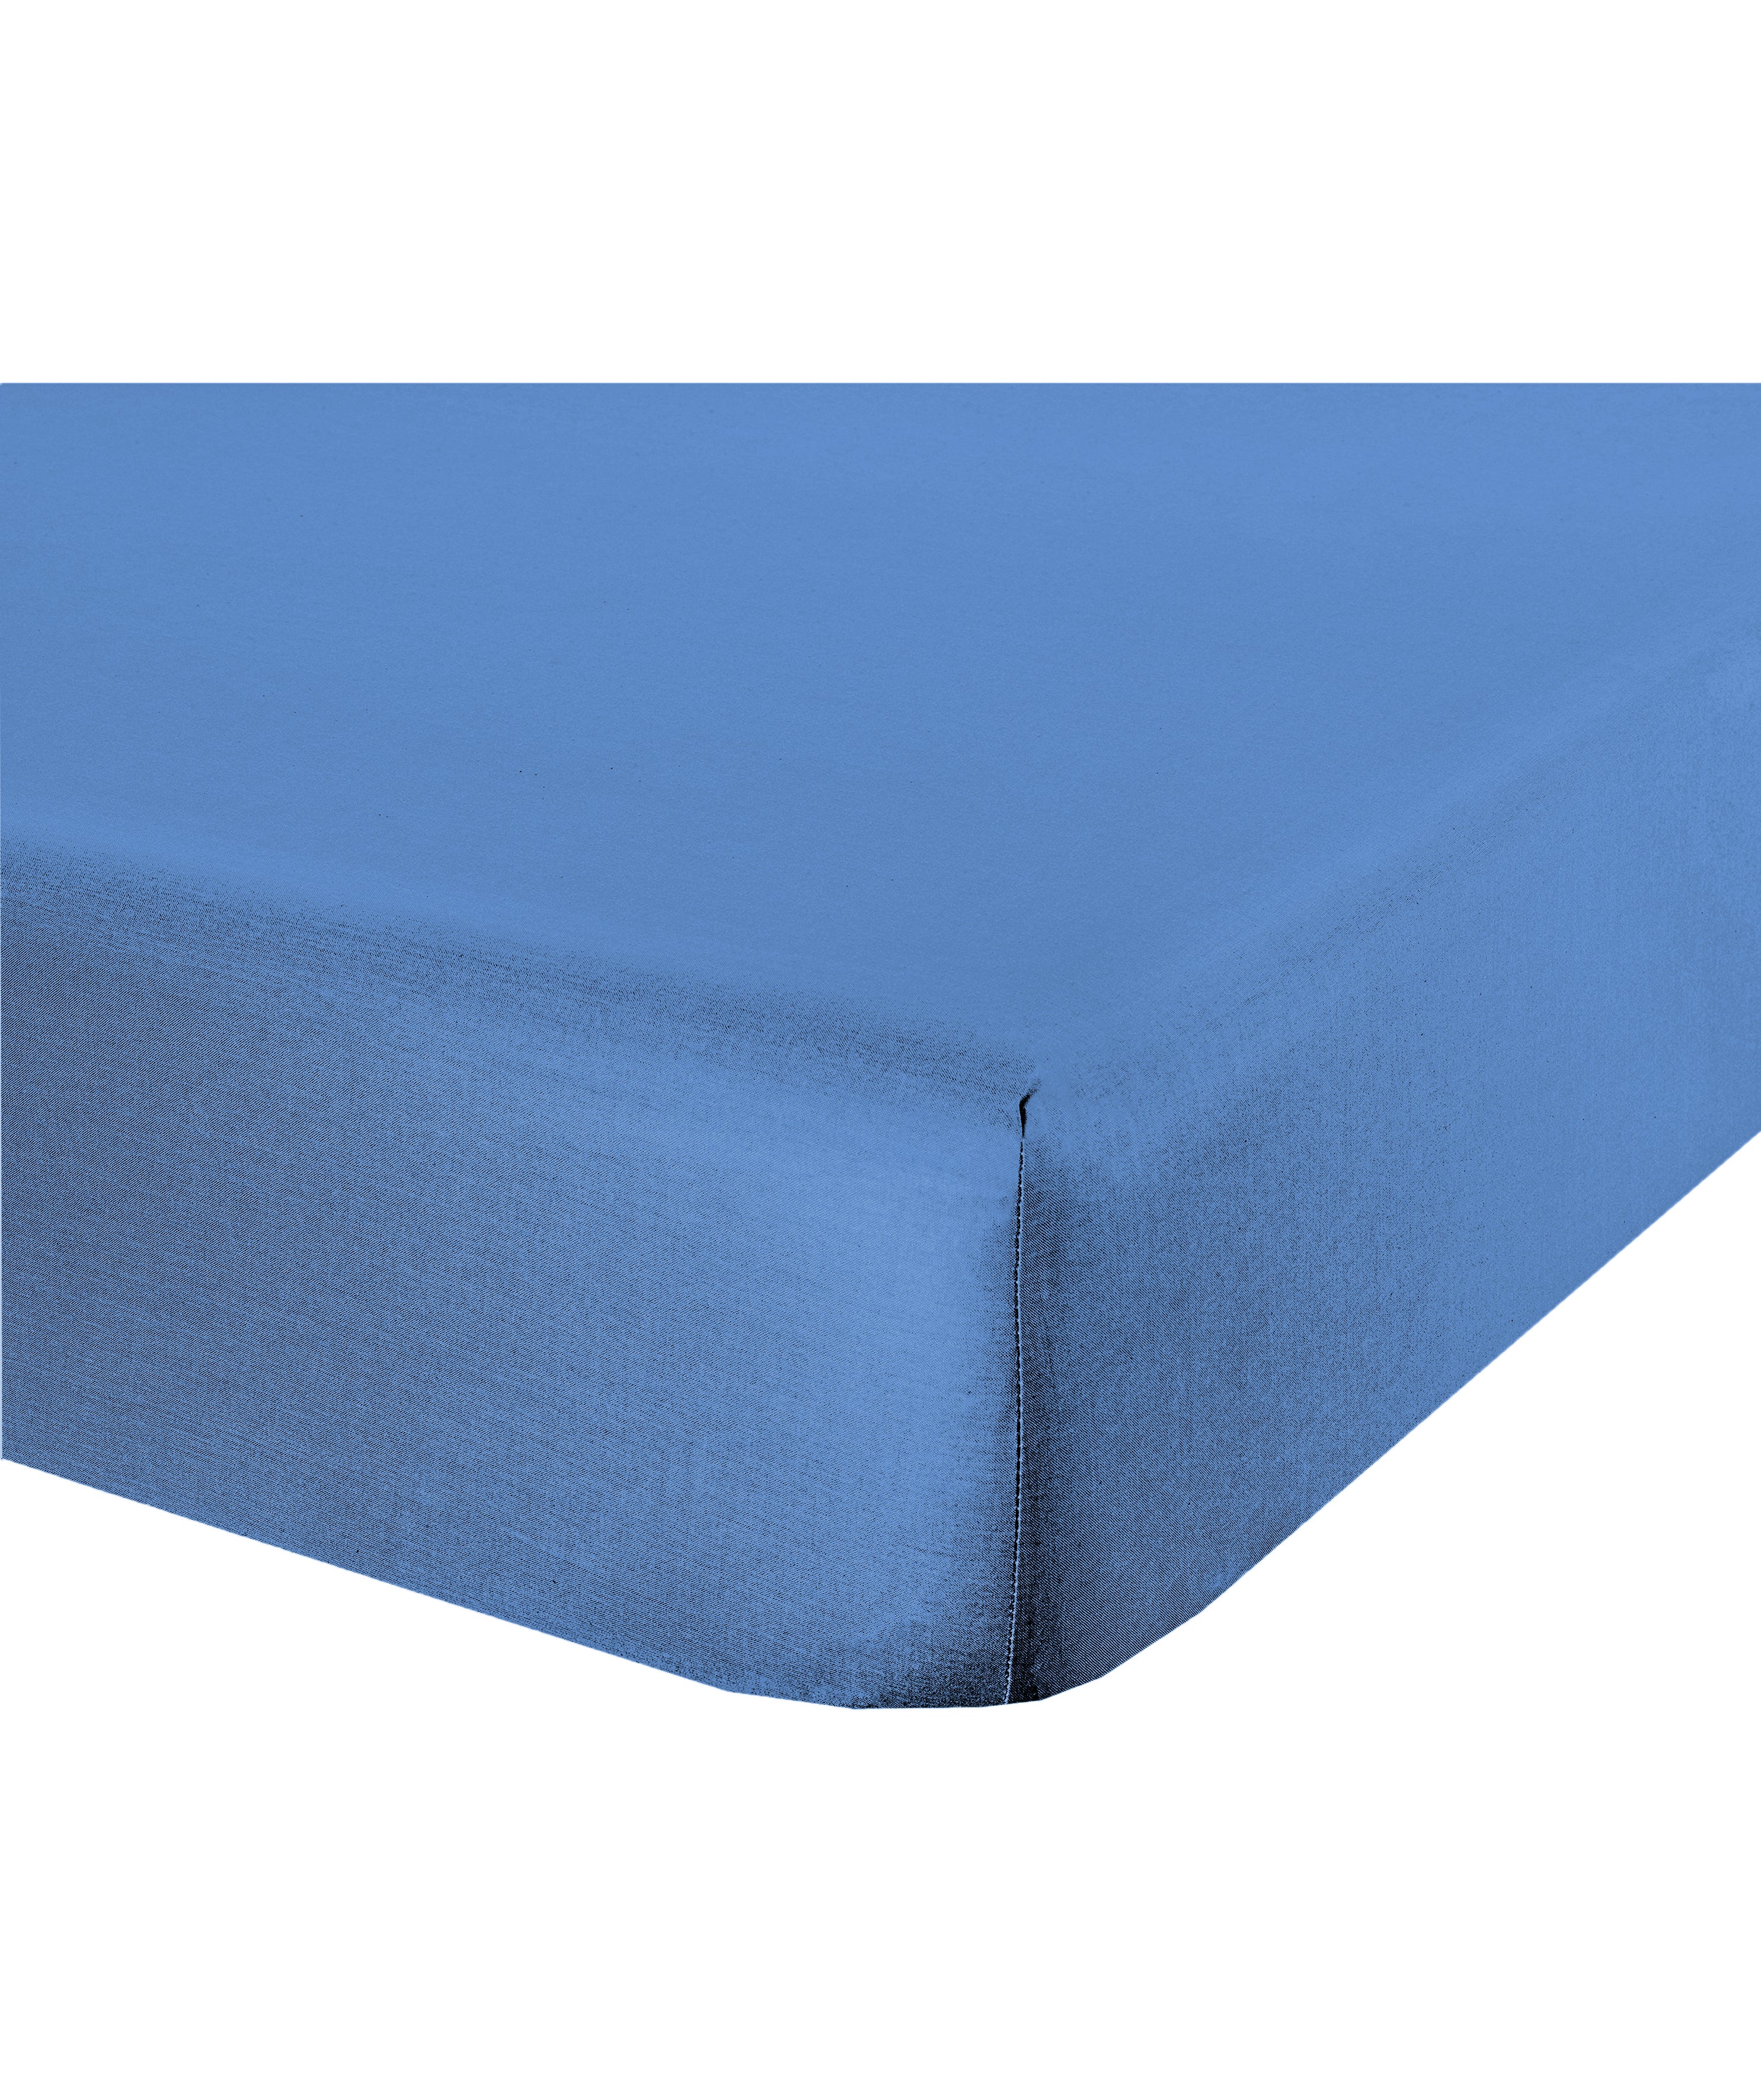 Lenzuolo letto sotto lenzuola con angoli flanella caldo cotone 100% cotone Made in Italy AZZURRO